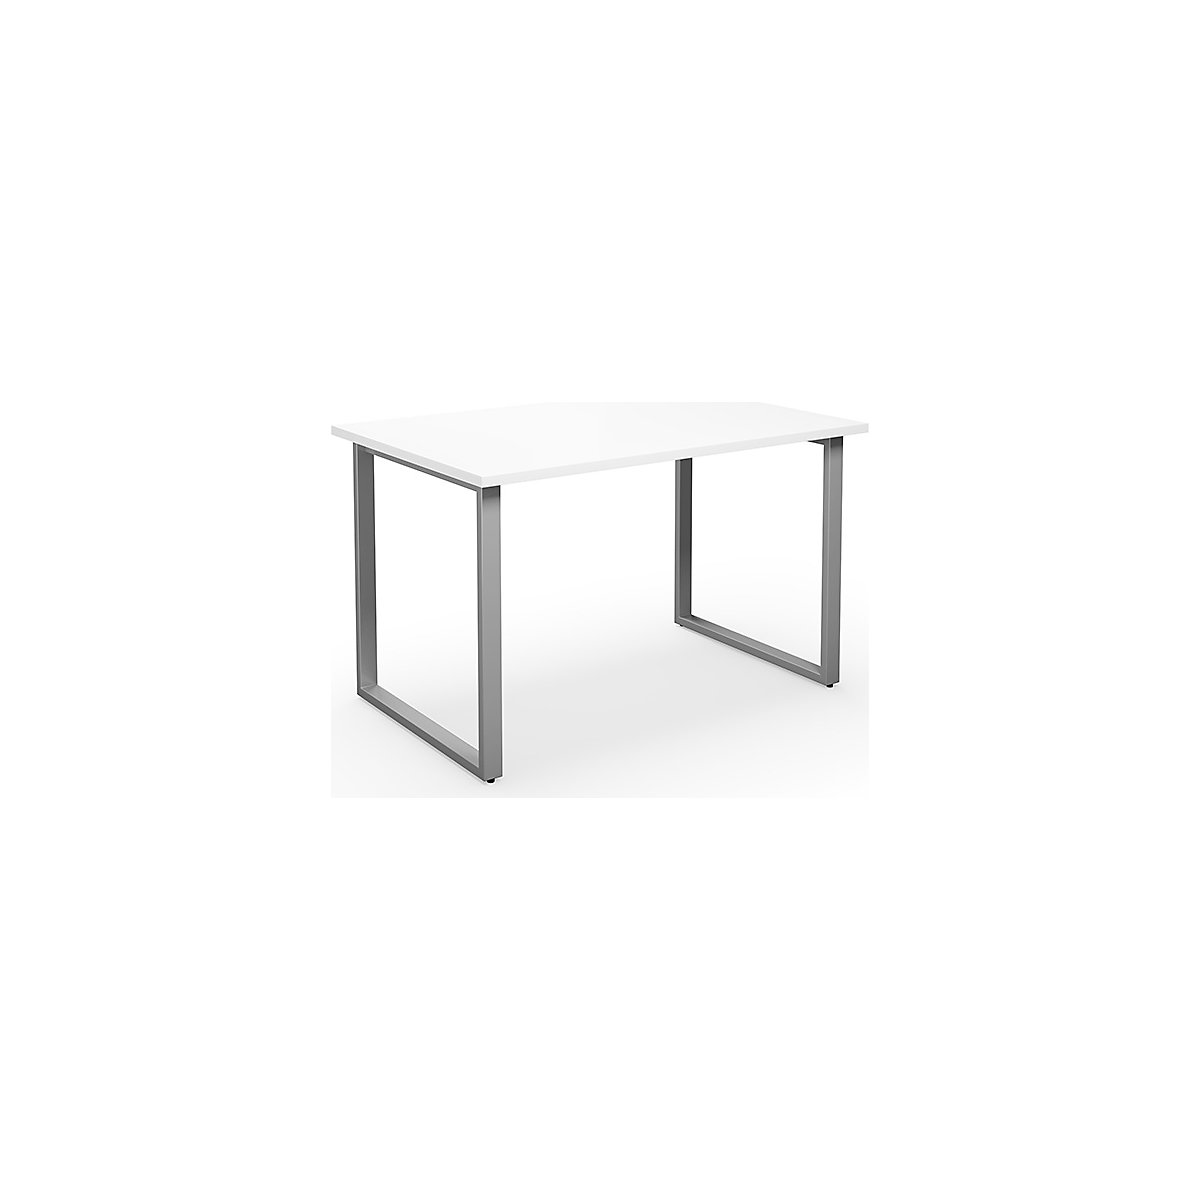 DUO-O multi-purpose desk, straight tabletop, WxD 1200 x 800 mm, white, silver-10